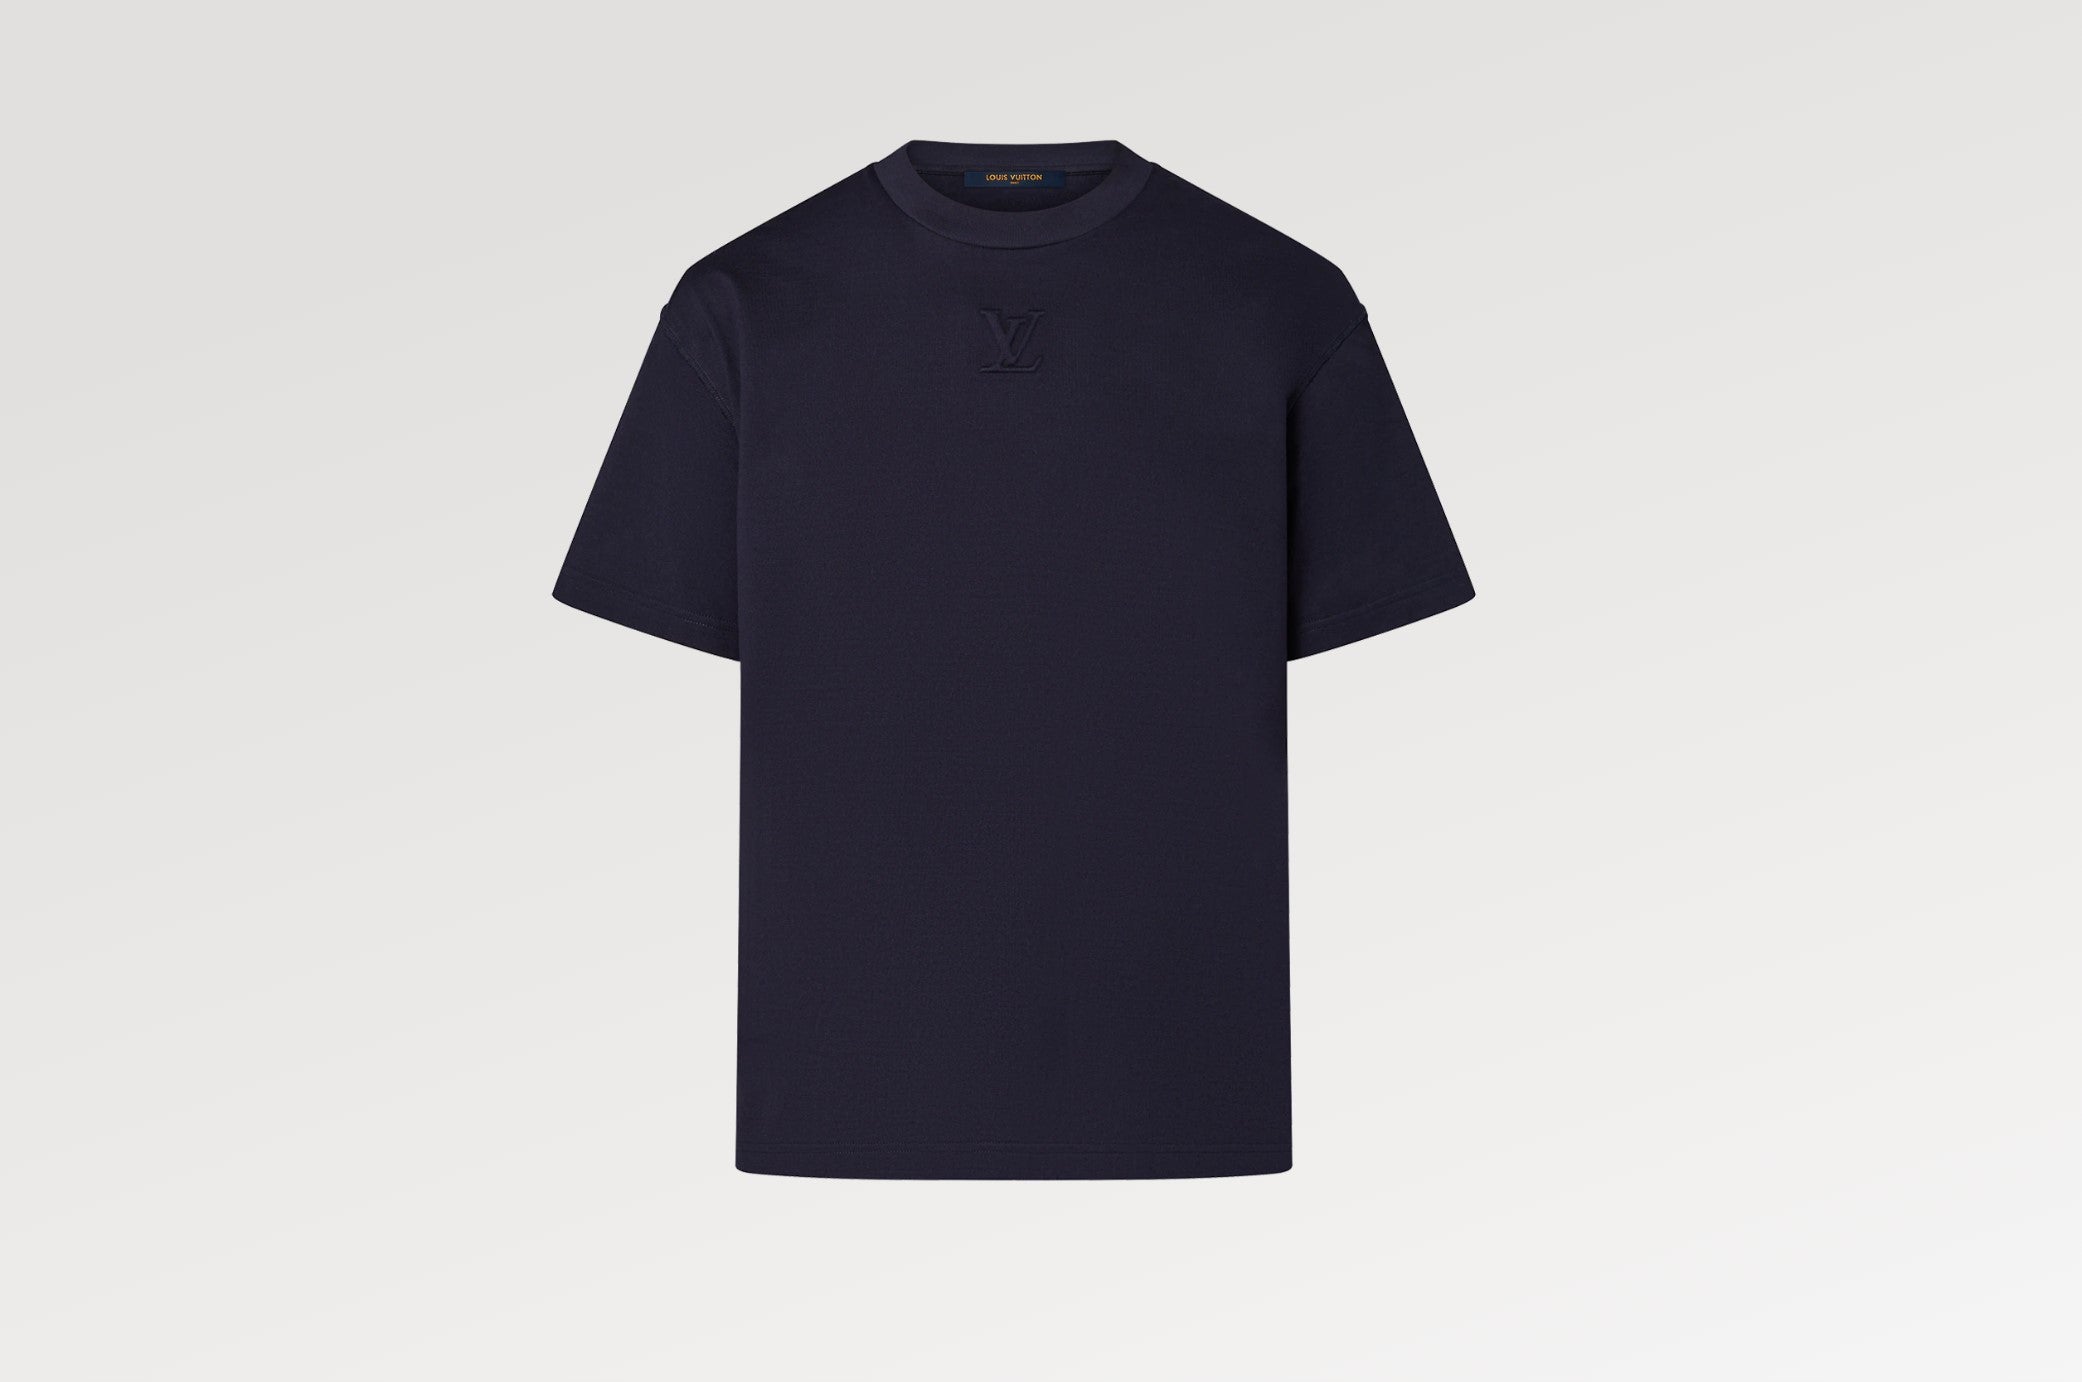 Louis Vuitton Intarsia Jacquard Heart Crewneck T-shirt